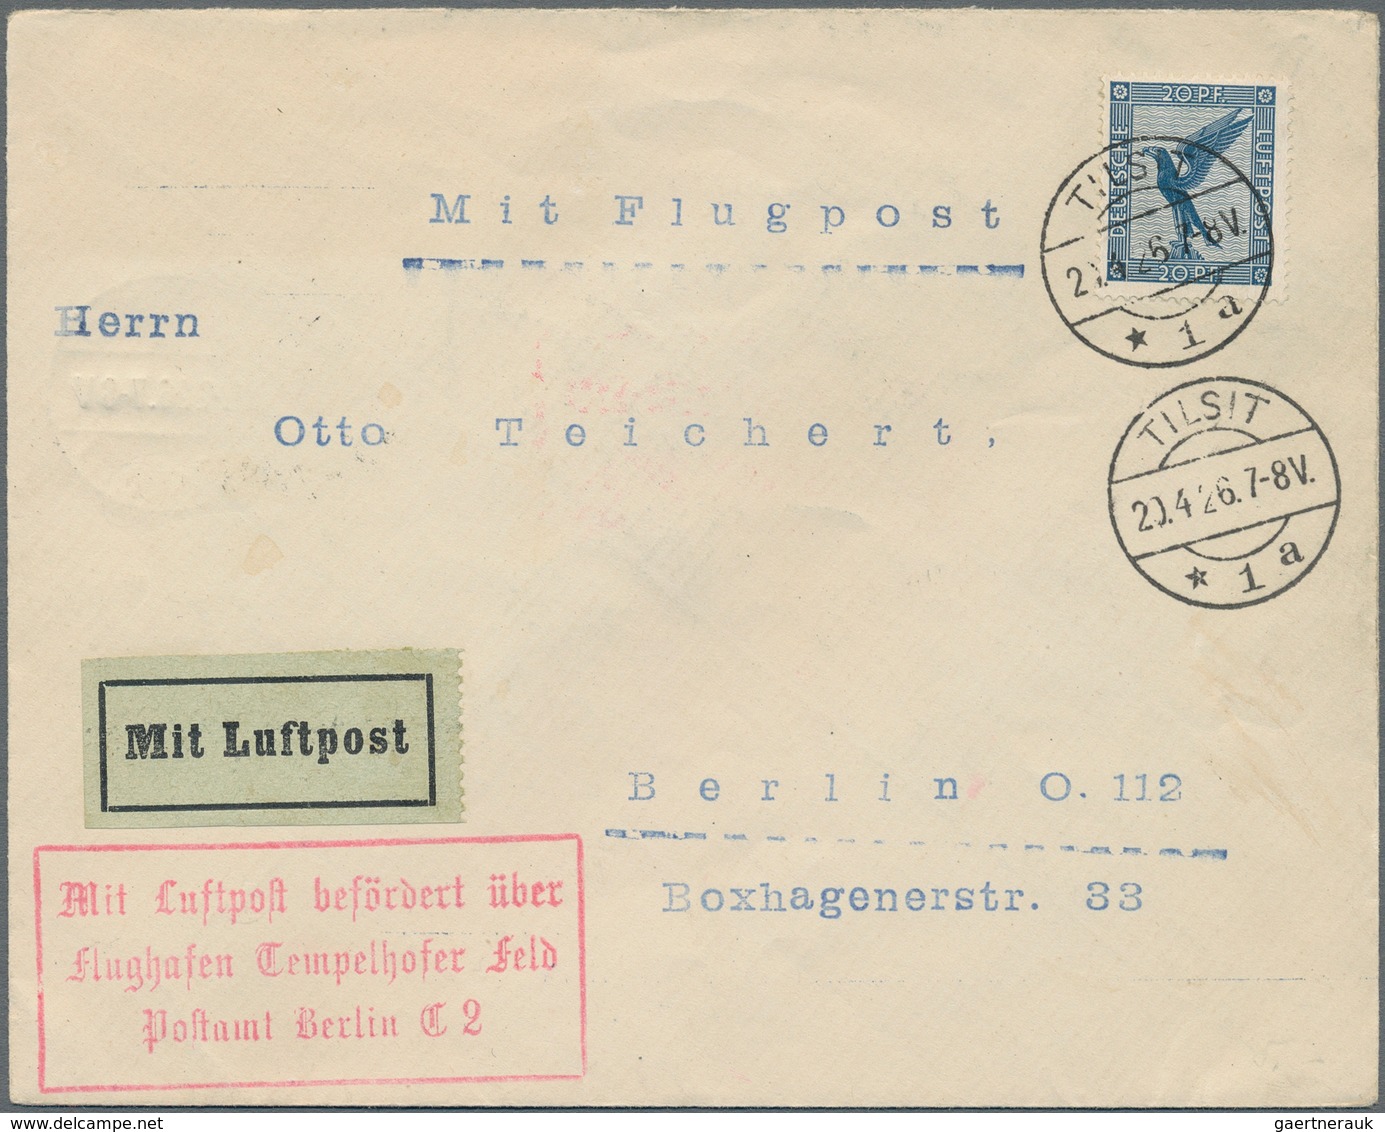 Flugpost Deutschland: 1924/1944, gehaltvoller Sammlungsbestand mit ca.60 Belegen, dabei viel Bedarfs